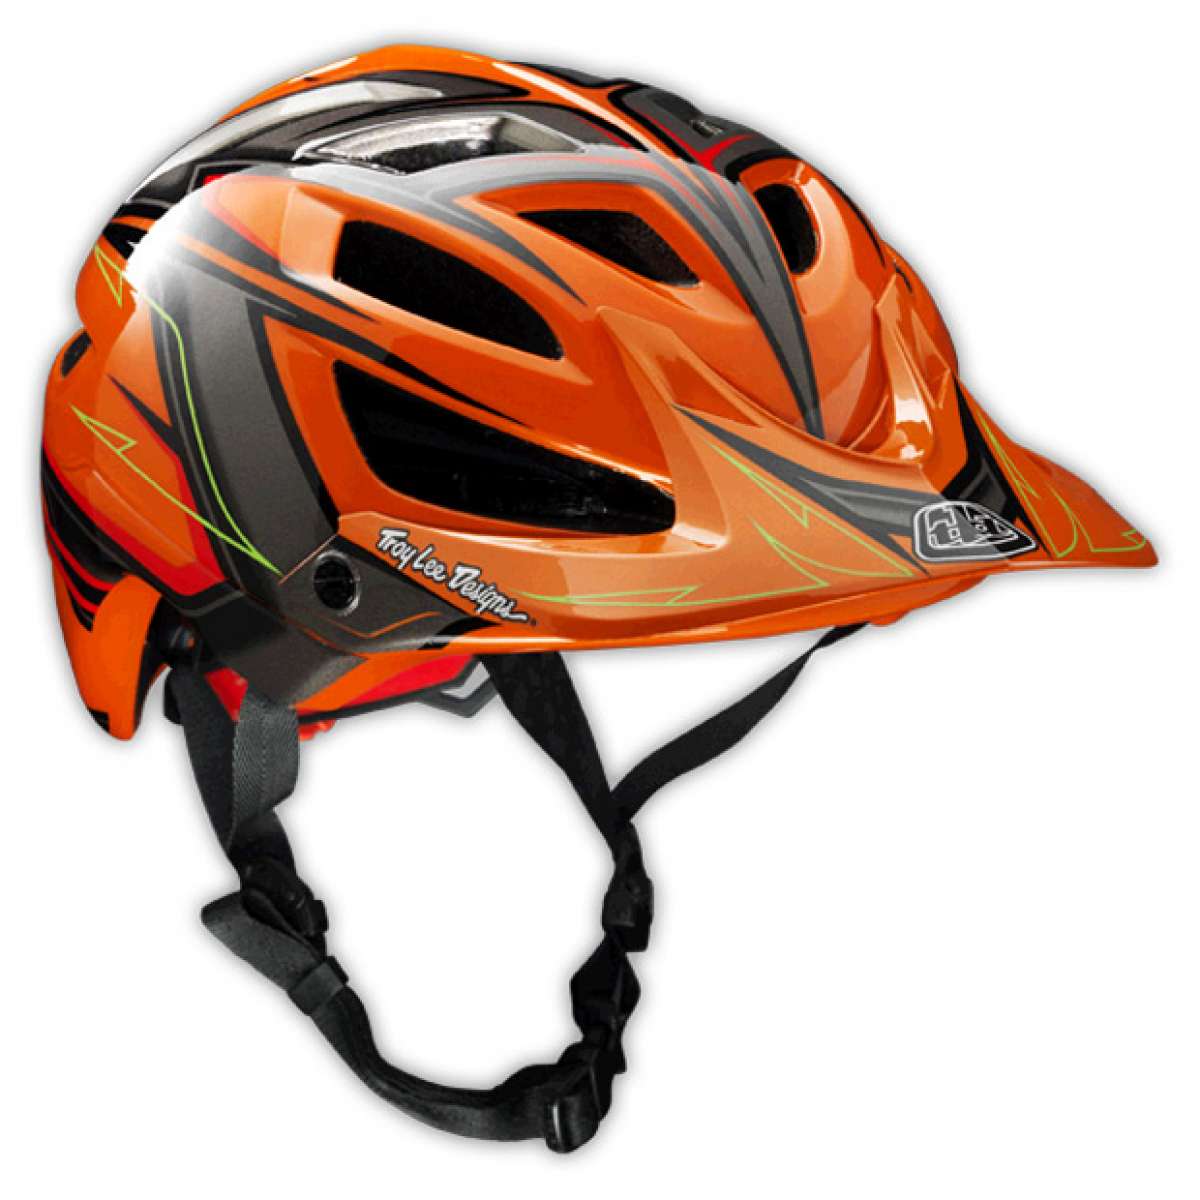 Troy Lee Designs 2014: Nueva gama de cascos con ediciones firmadas de Cam Zink y Aaron Gwin incluidas